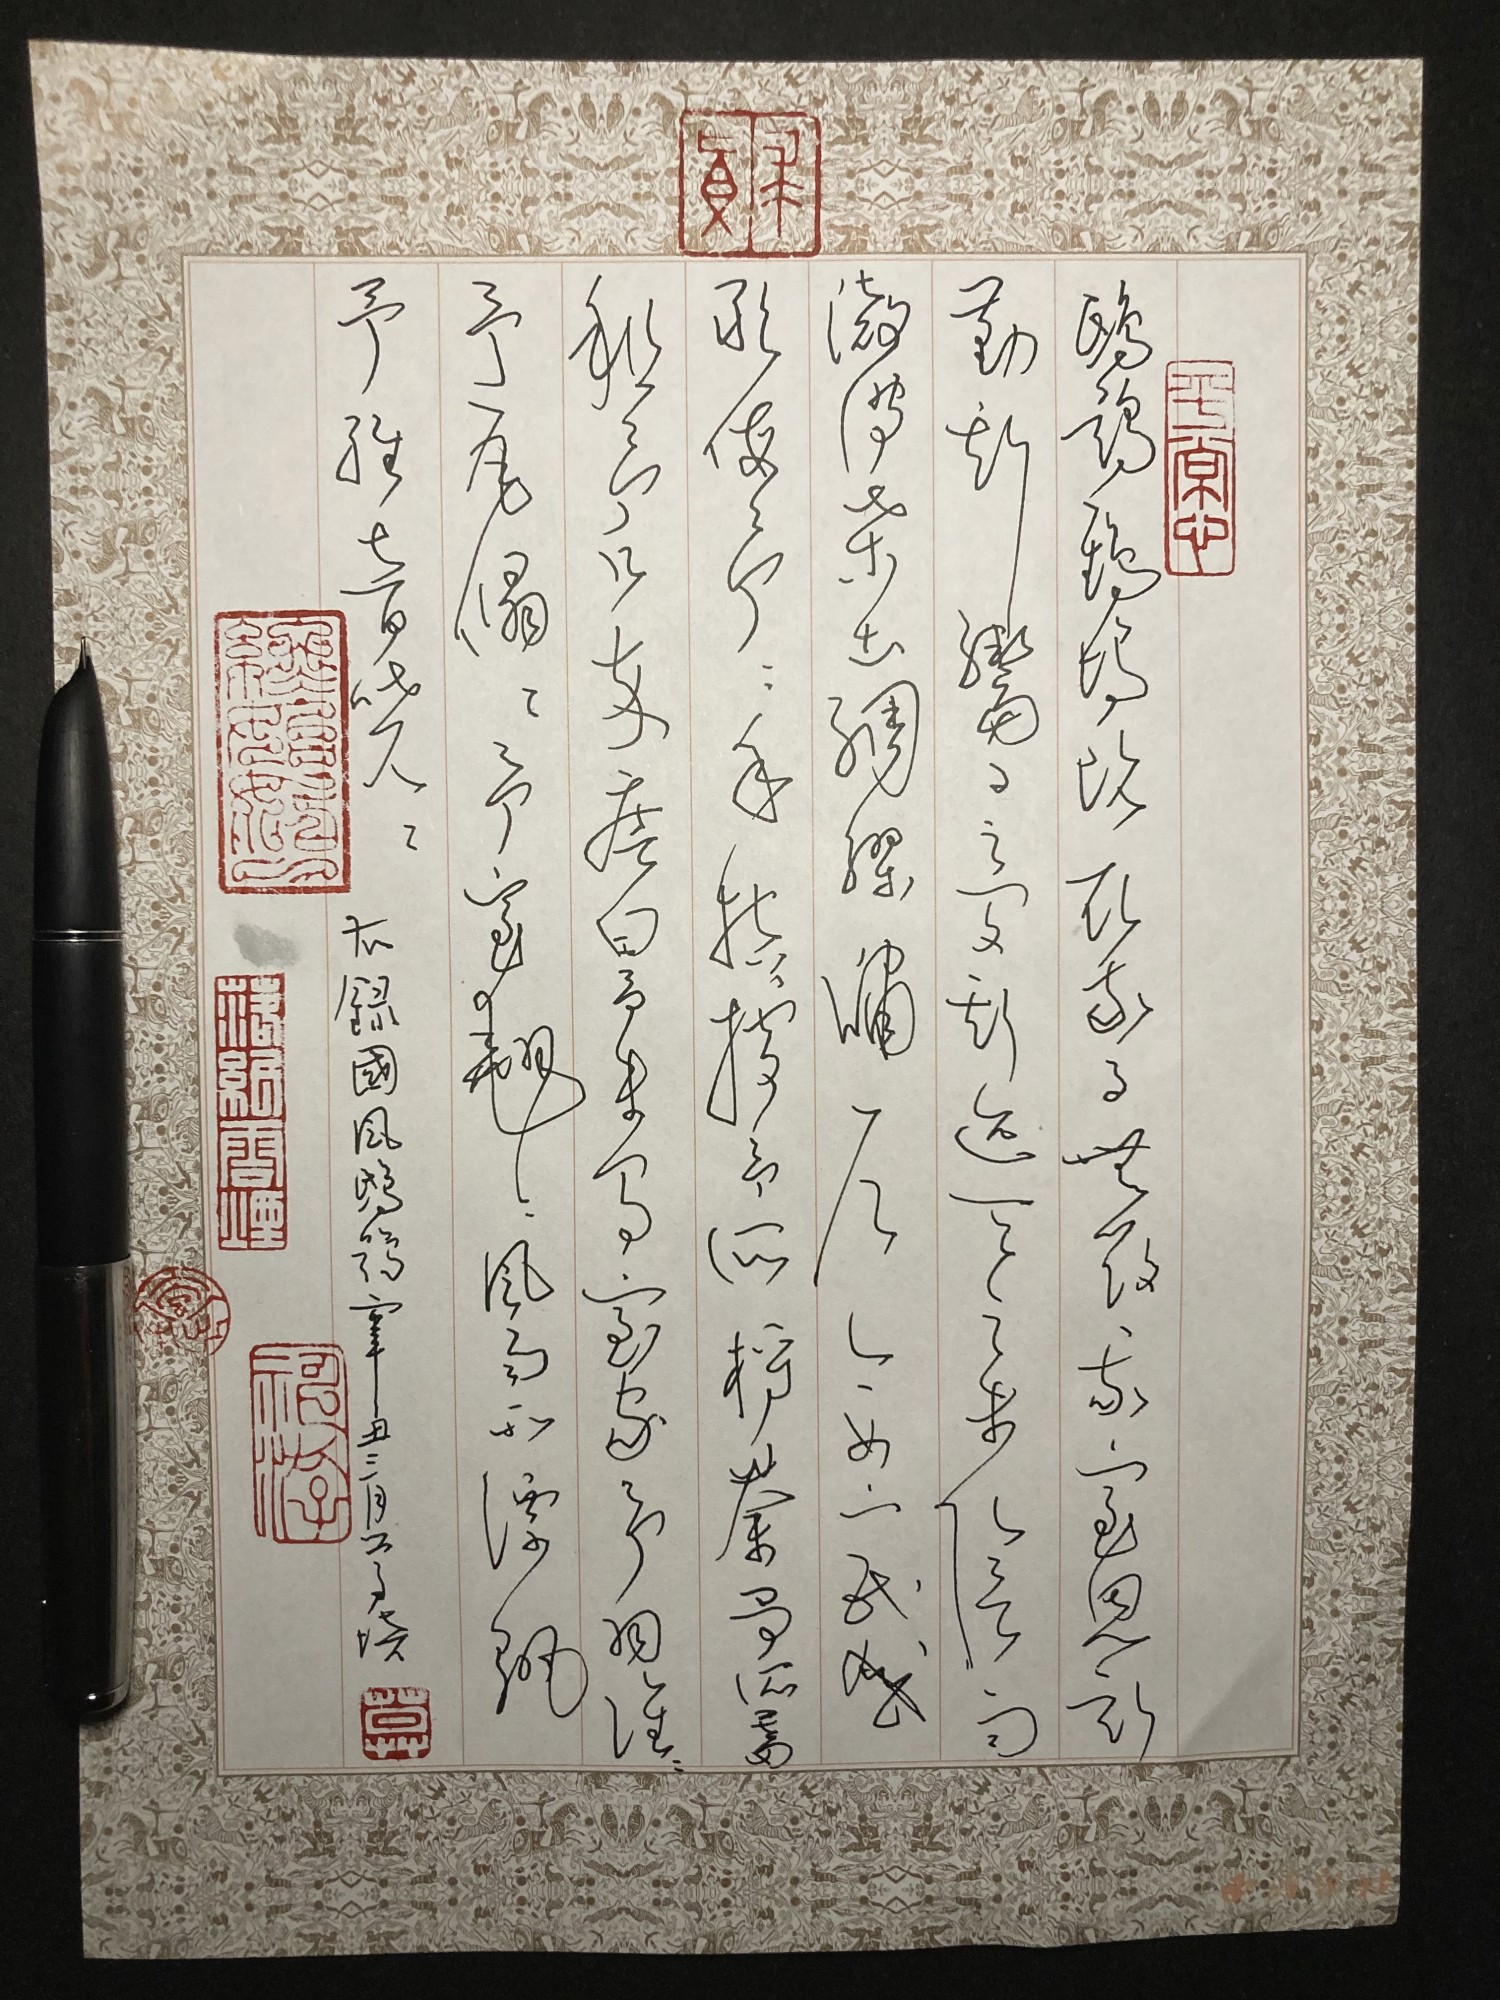 钢笔书法练字打卡20210427-14